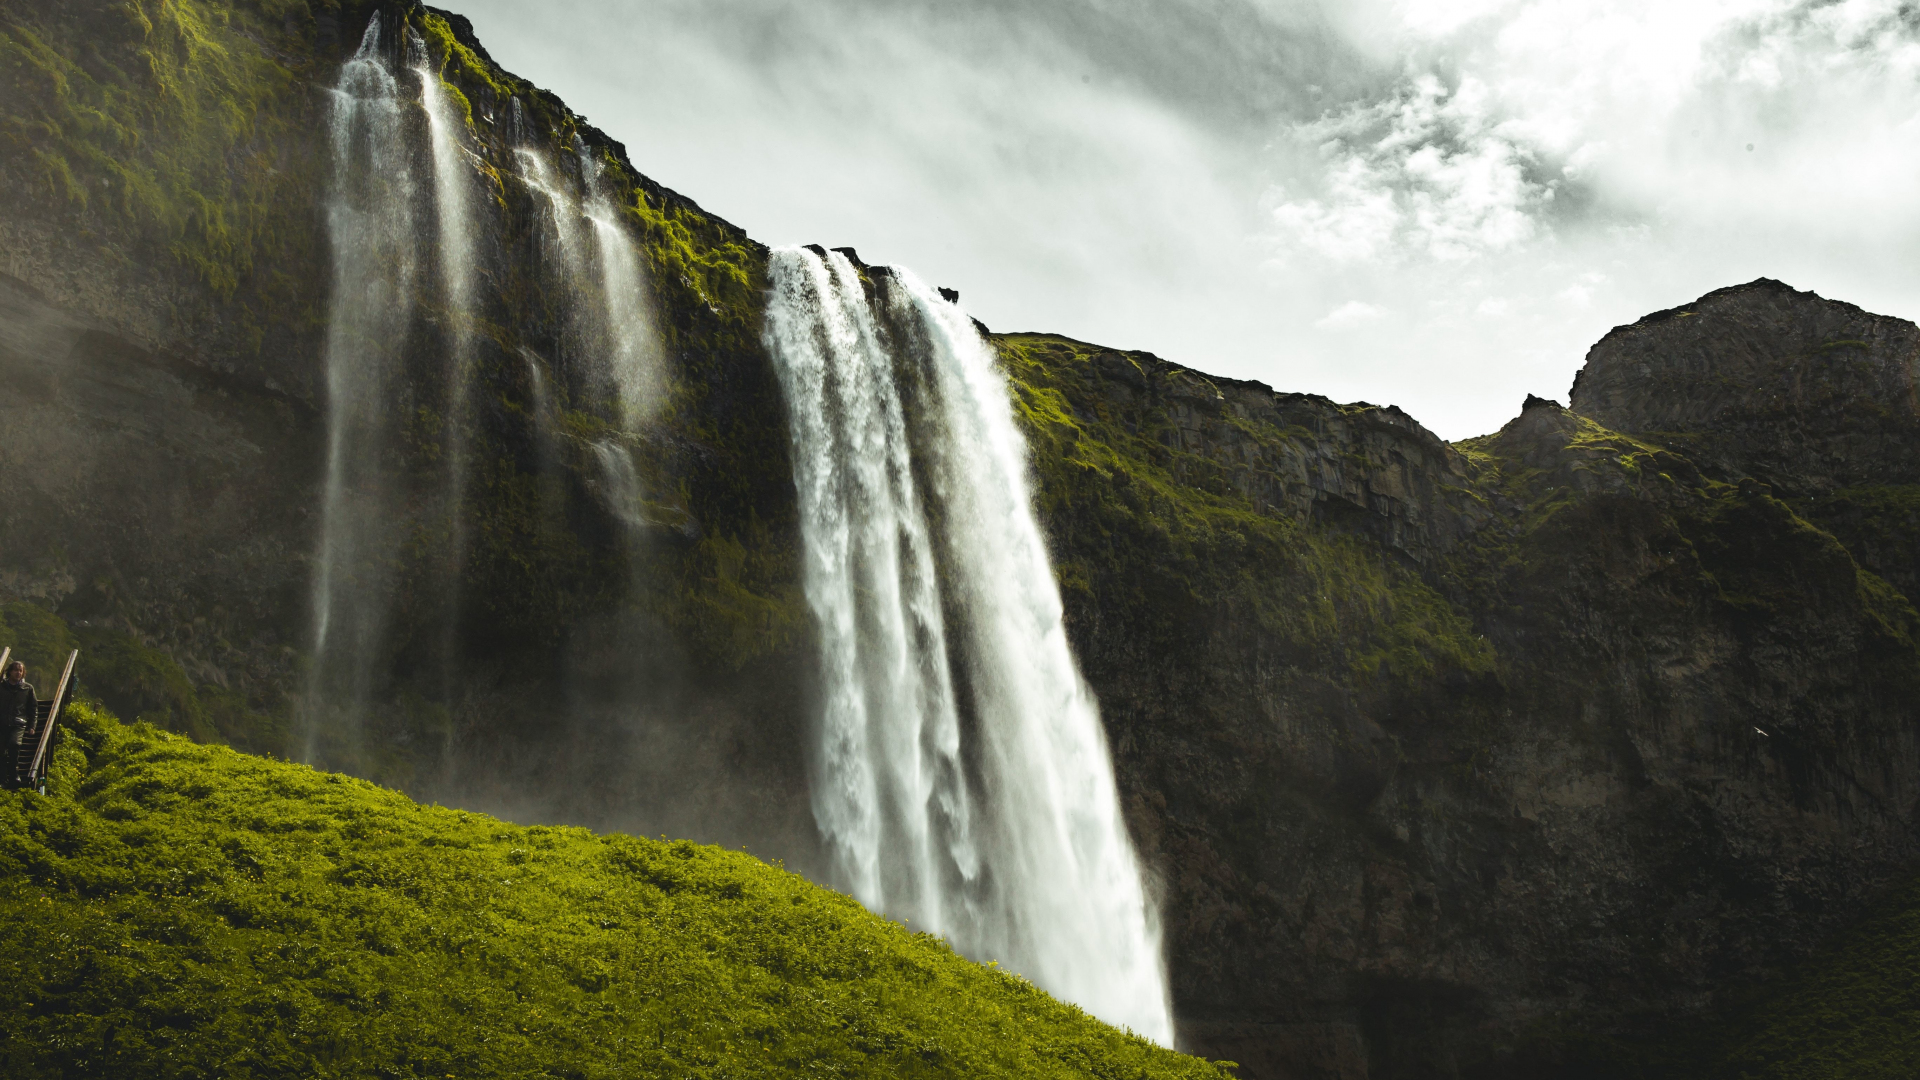 Download 1920x1080 Wallpaper Waterfall Nature Seljalandsfoss Images, Photos, Reviews